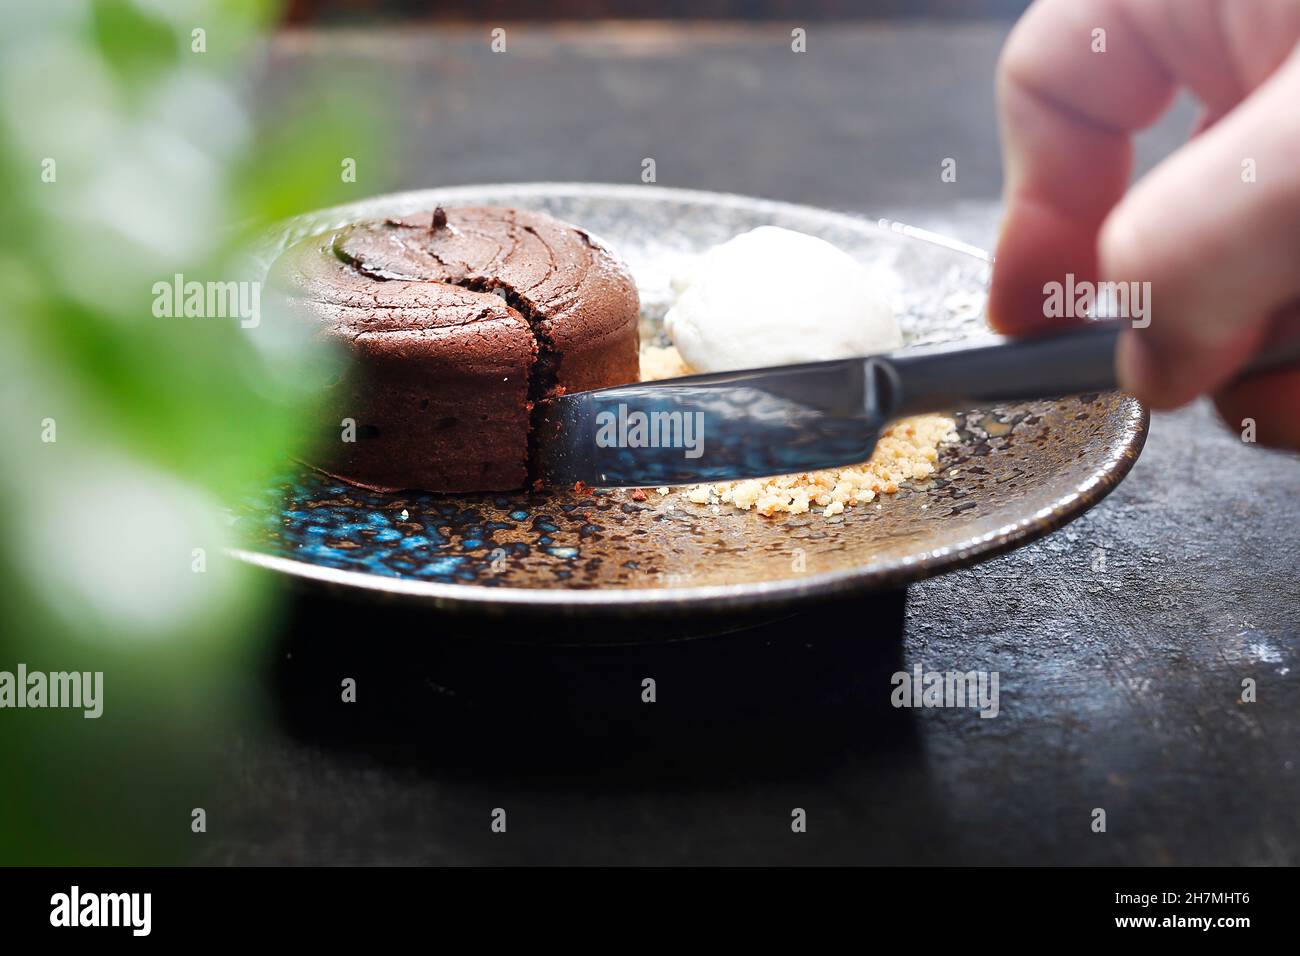 Gâteau au chocolat avec glace et noix.Délicieux dessert sucré.Un délicieux plat.photographie culinaire.Suggestion de servir le plat. Banque D'Images